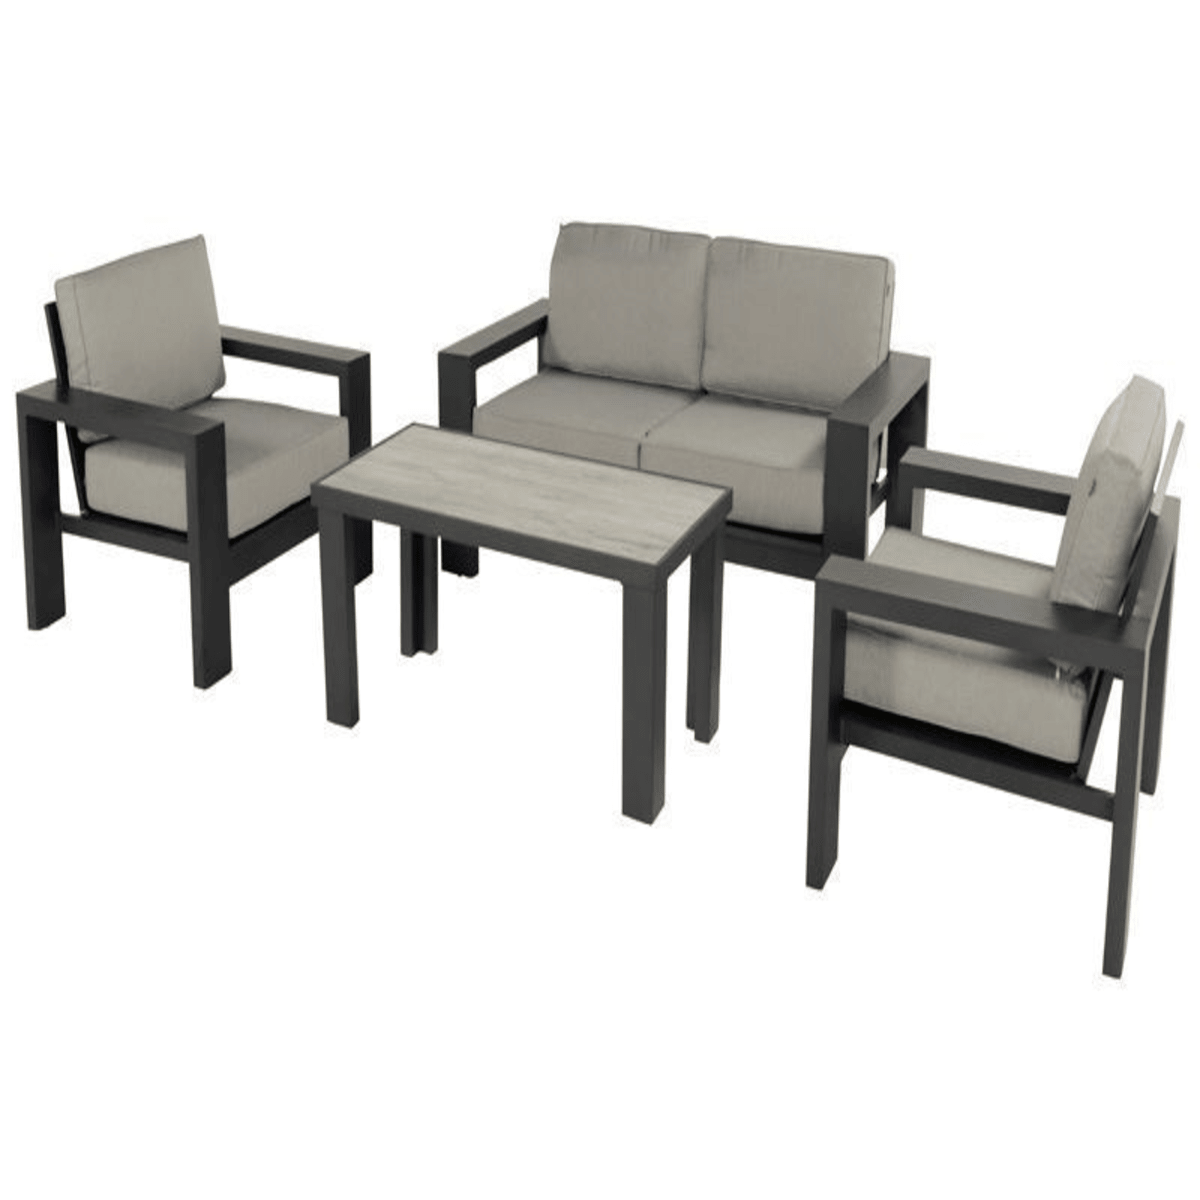 Ensemble salon de jardin - canapé 2 places + 2 fauteuils titan - gris/anthracite